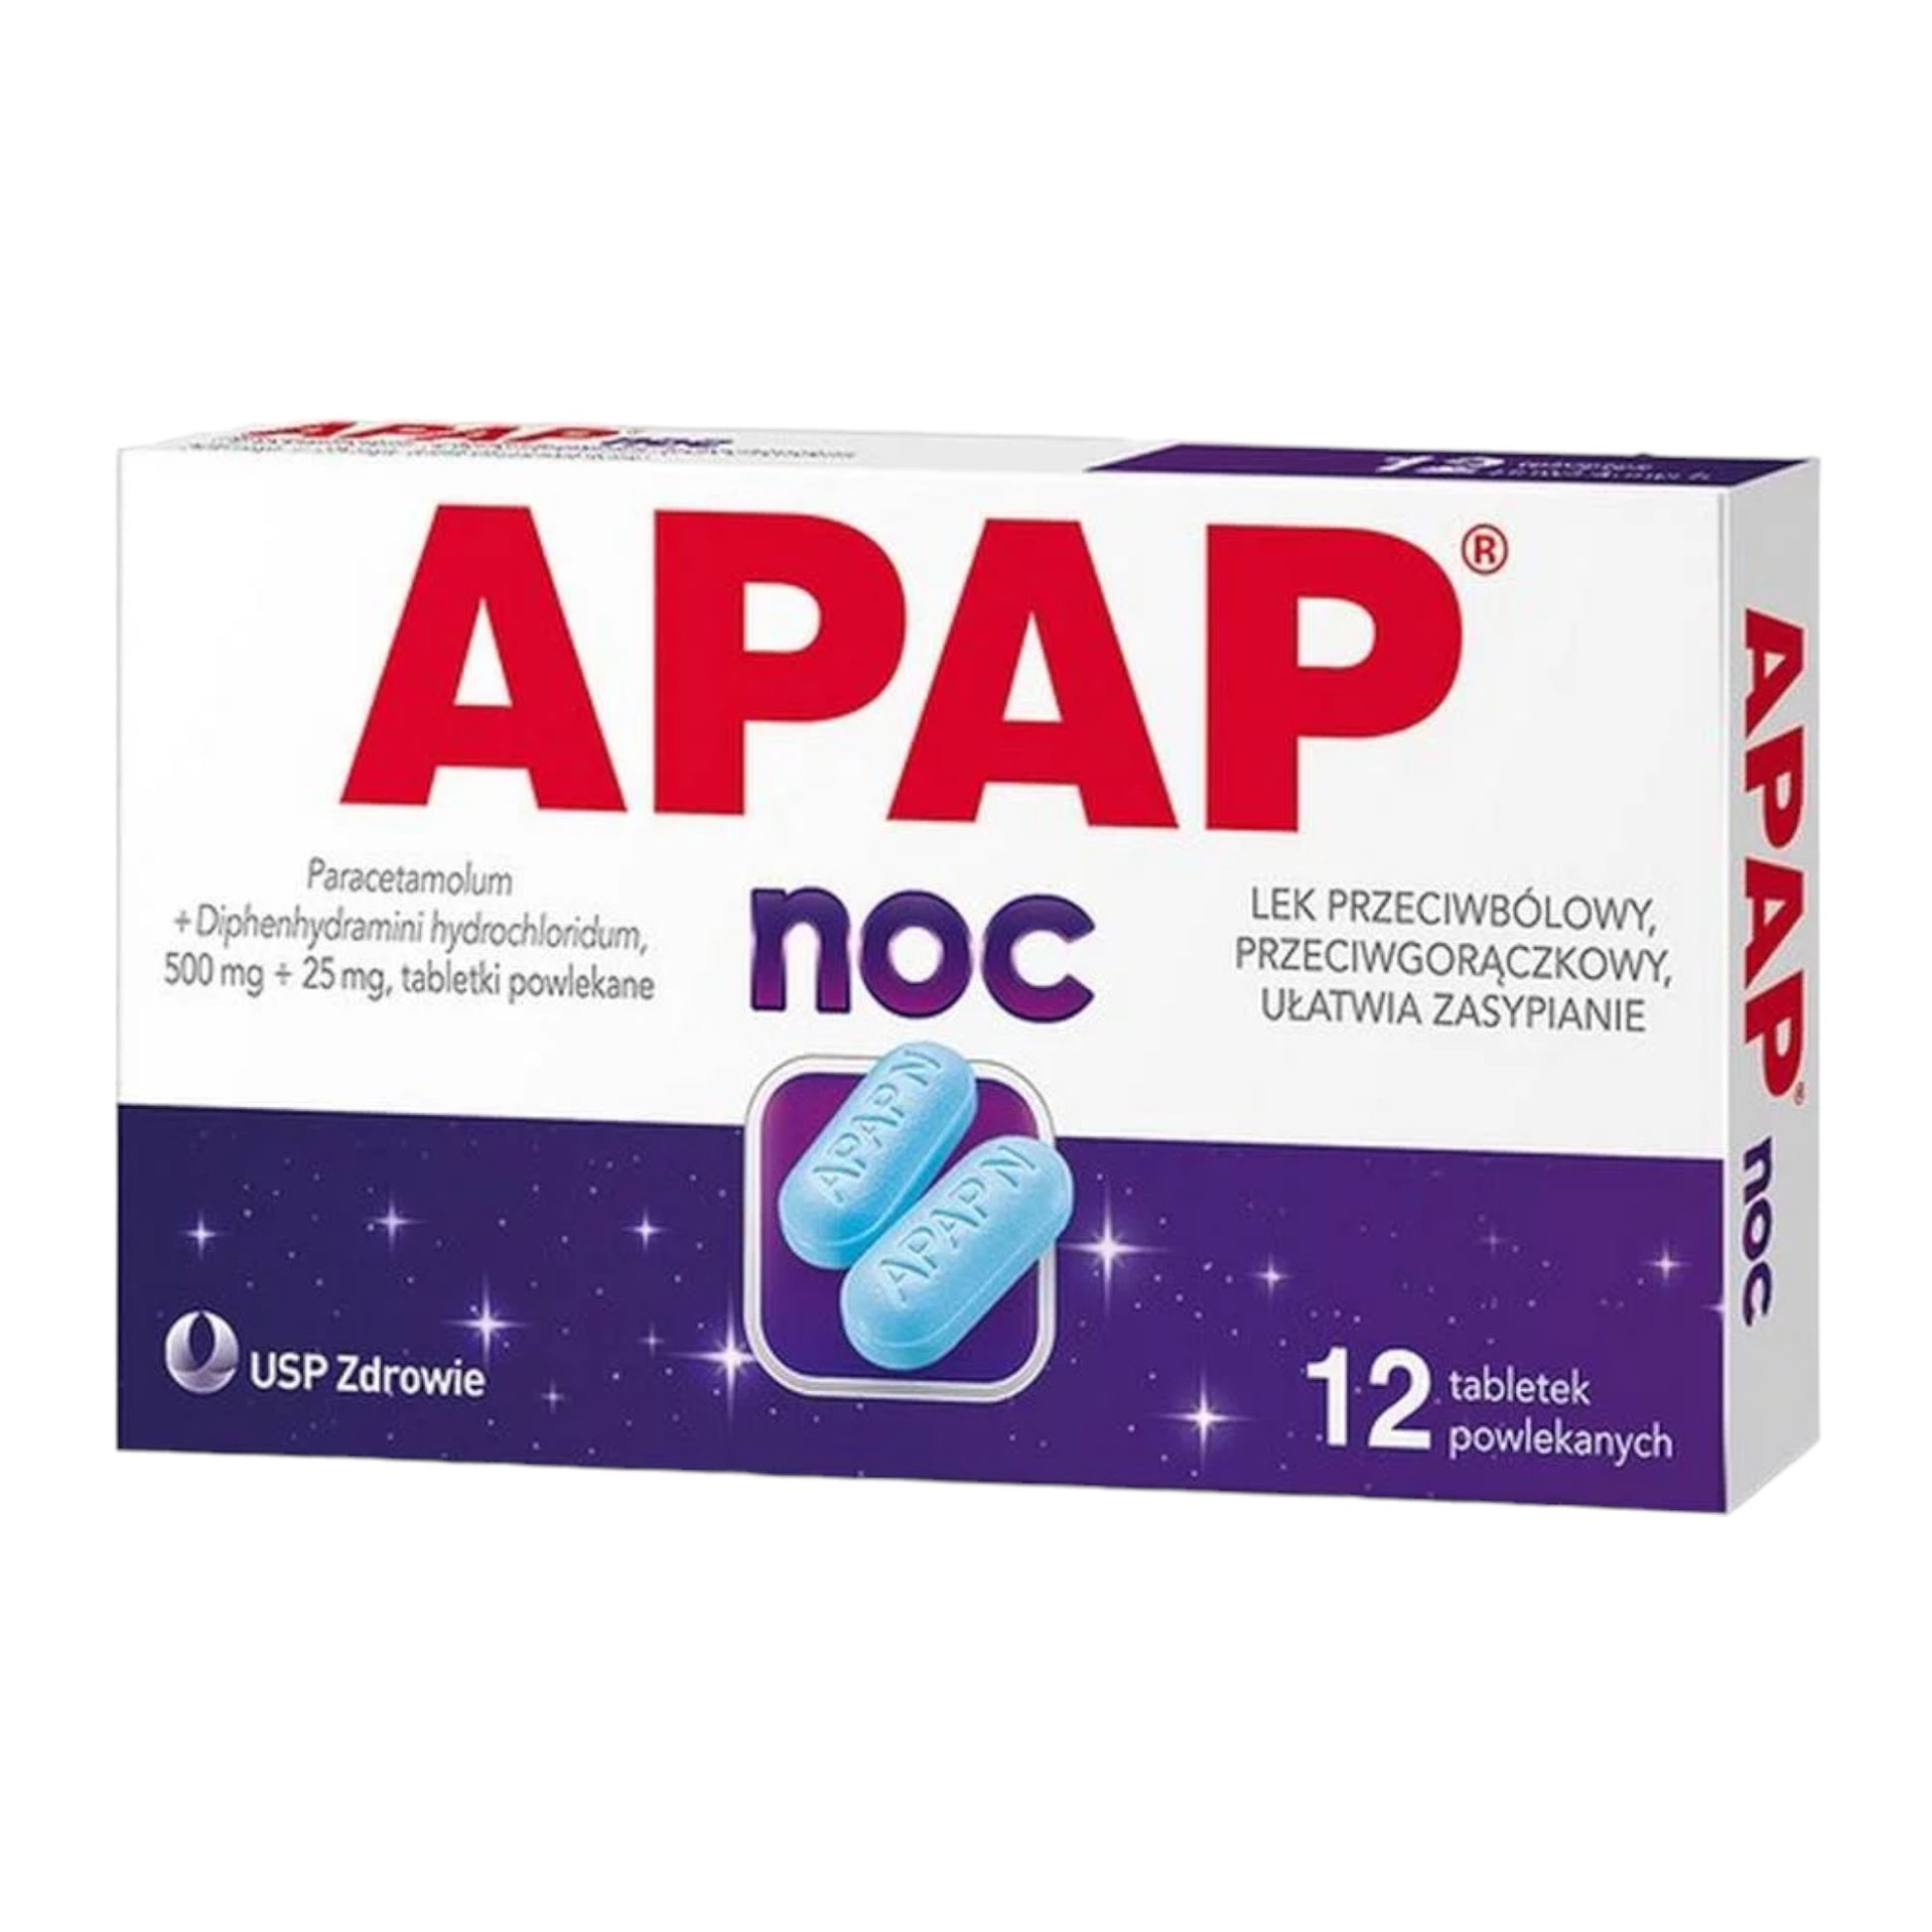 apap noc tablets